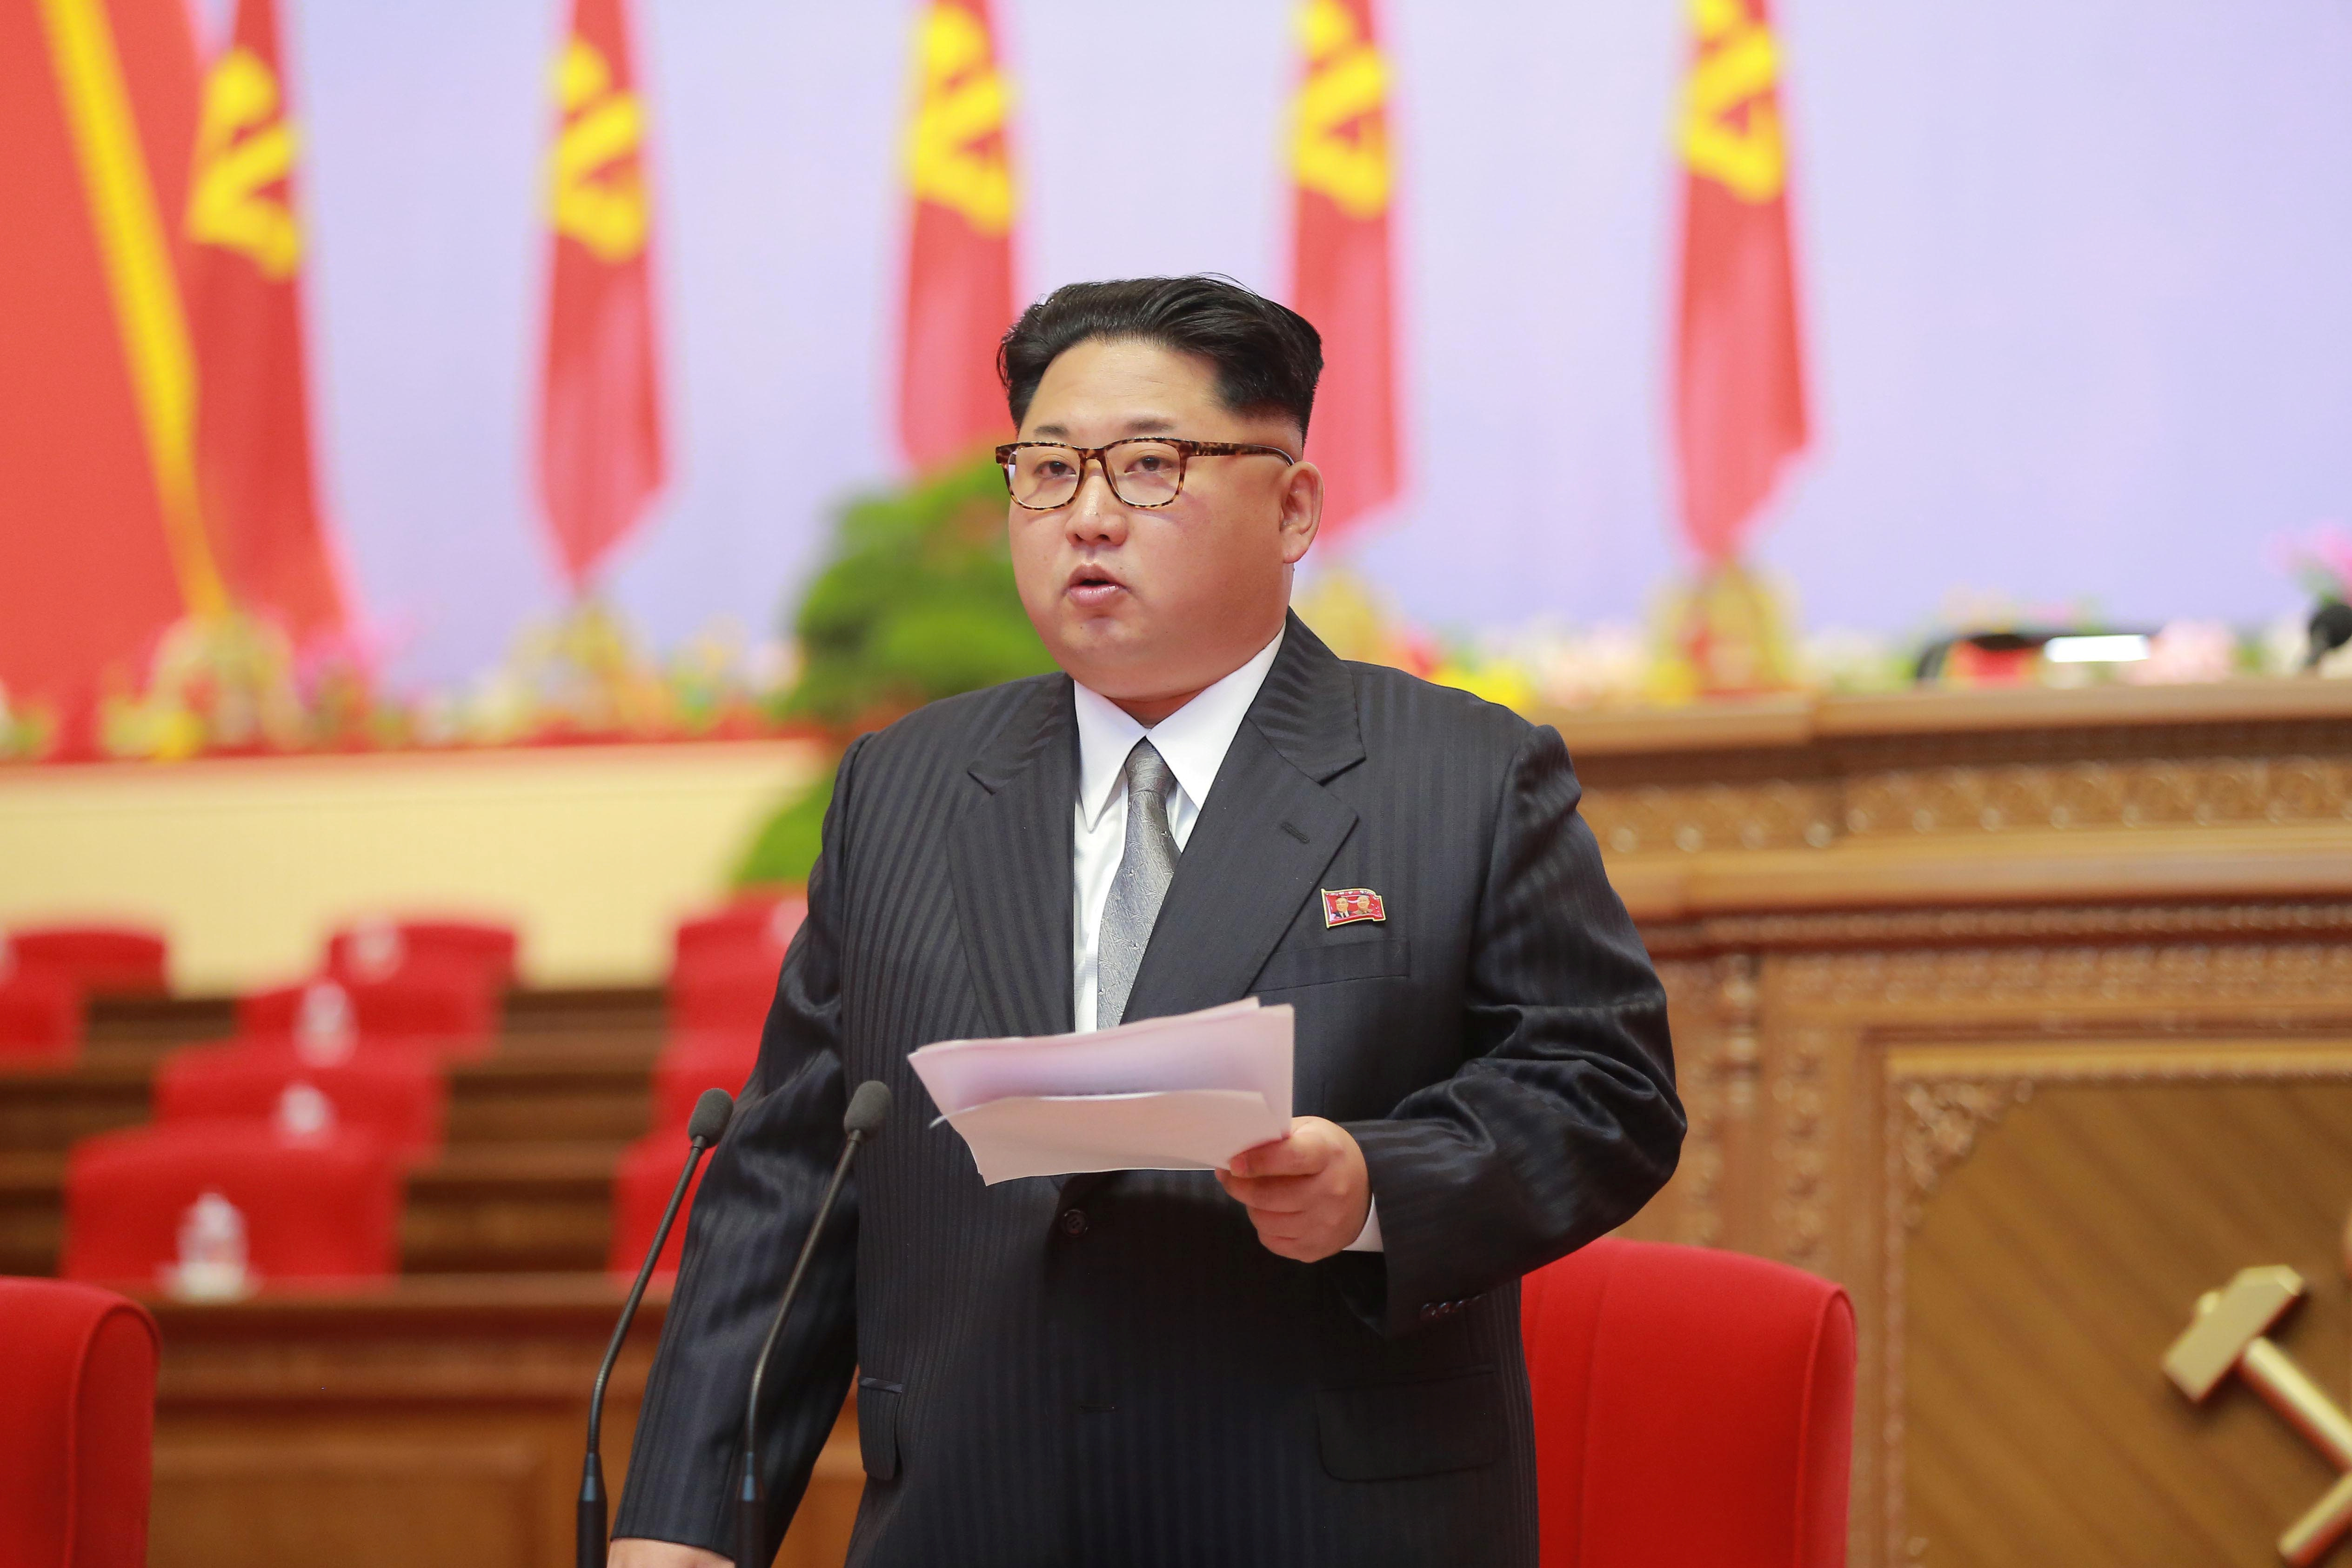  Corea del Norte corta comunicación con EU y amenaza con ataque